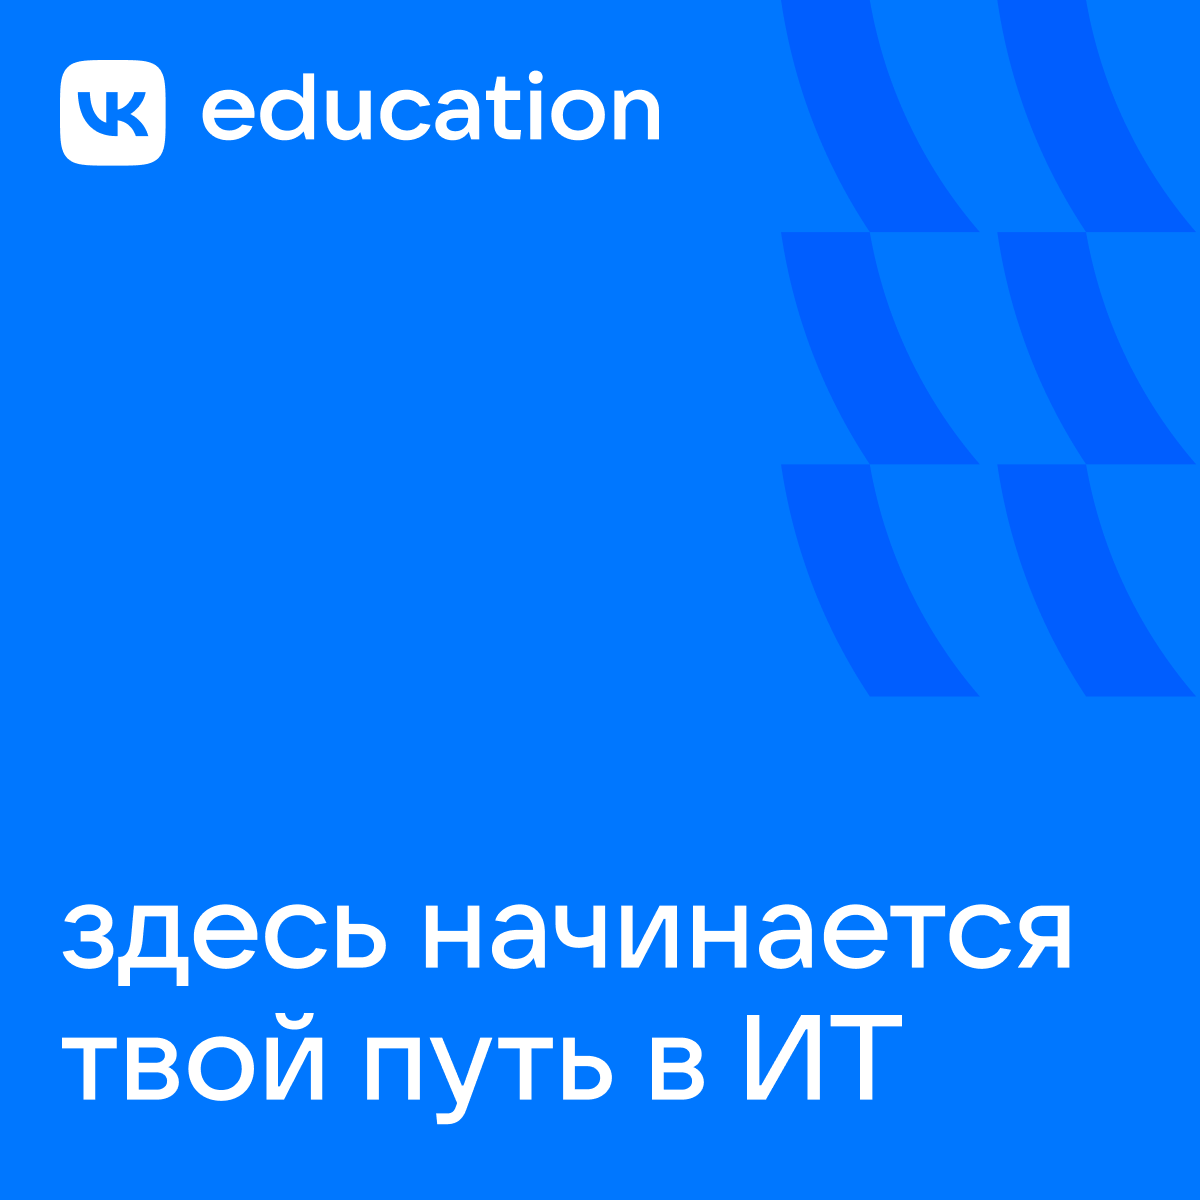 education vk company